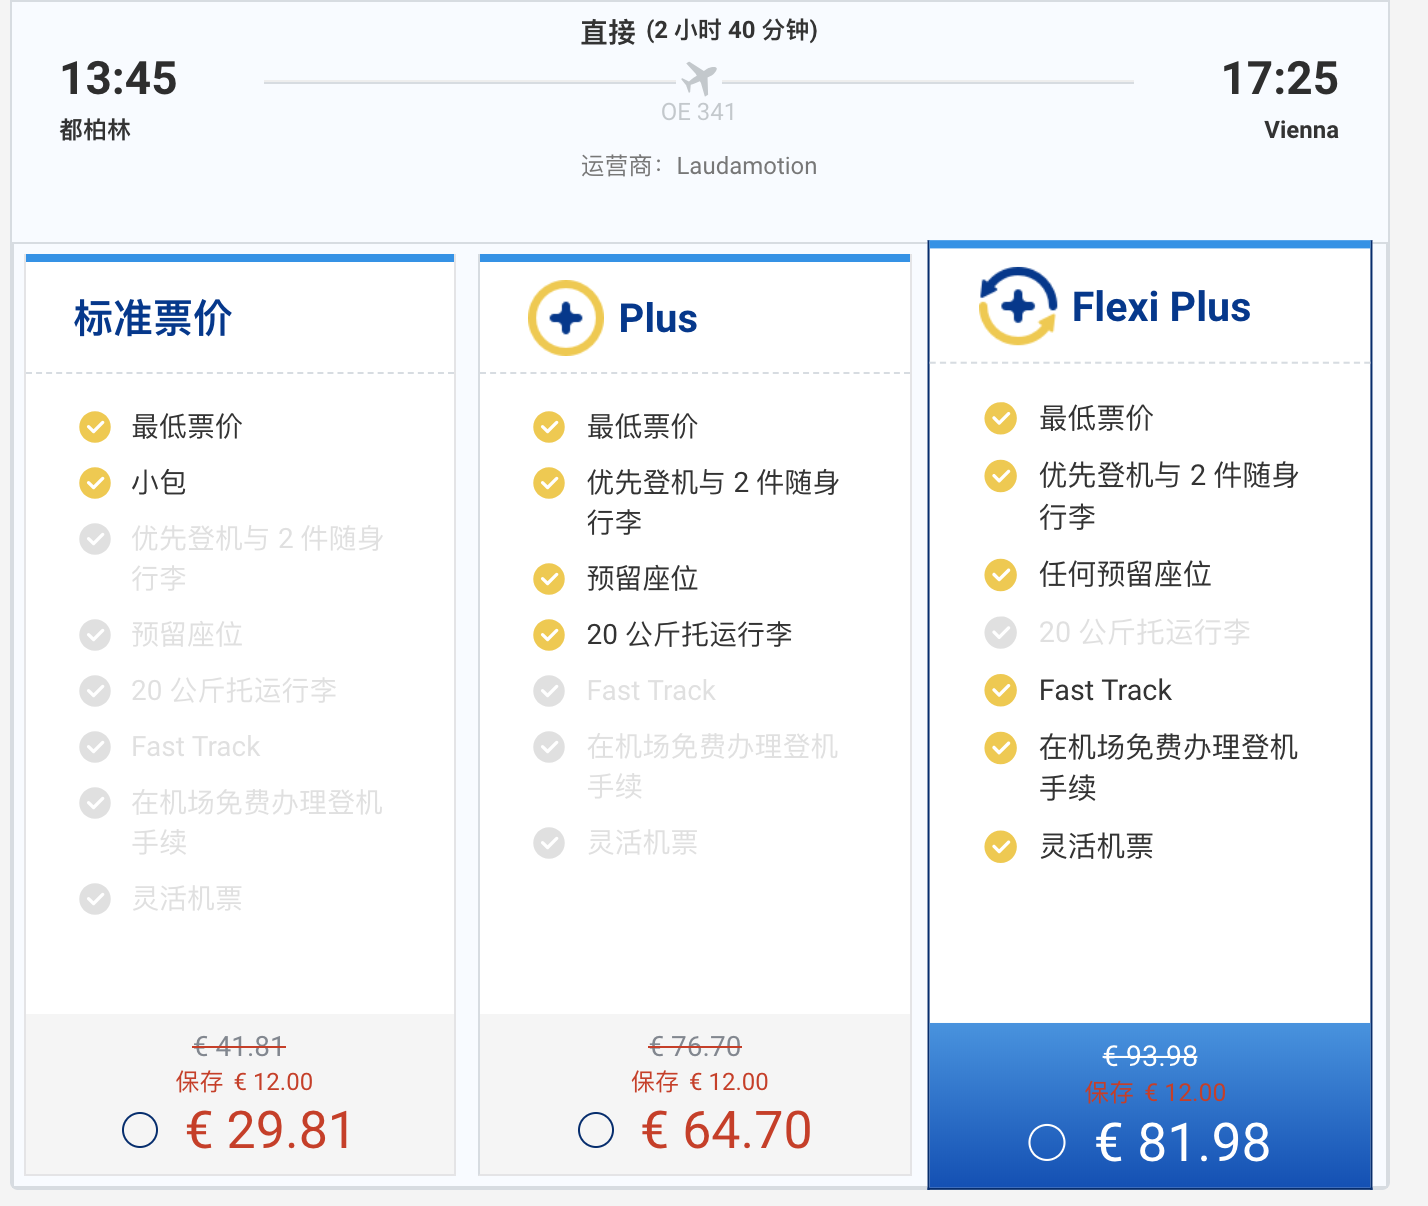 瑞安航空機票怎麼買？歐洲境內廉價航空Ryan air簡體中文購票教學步驟、注意事項與14歐促銷說明～